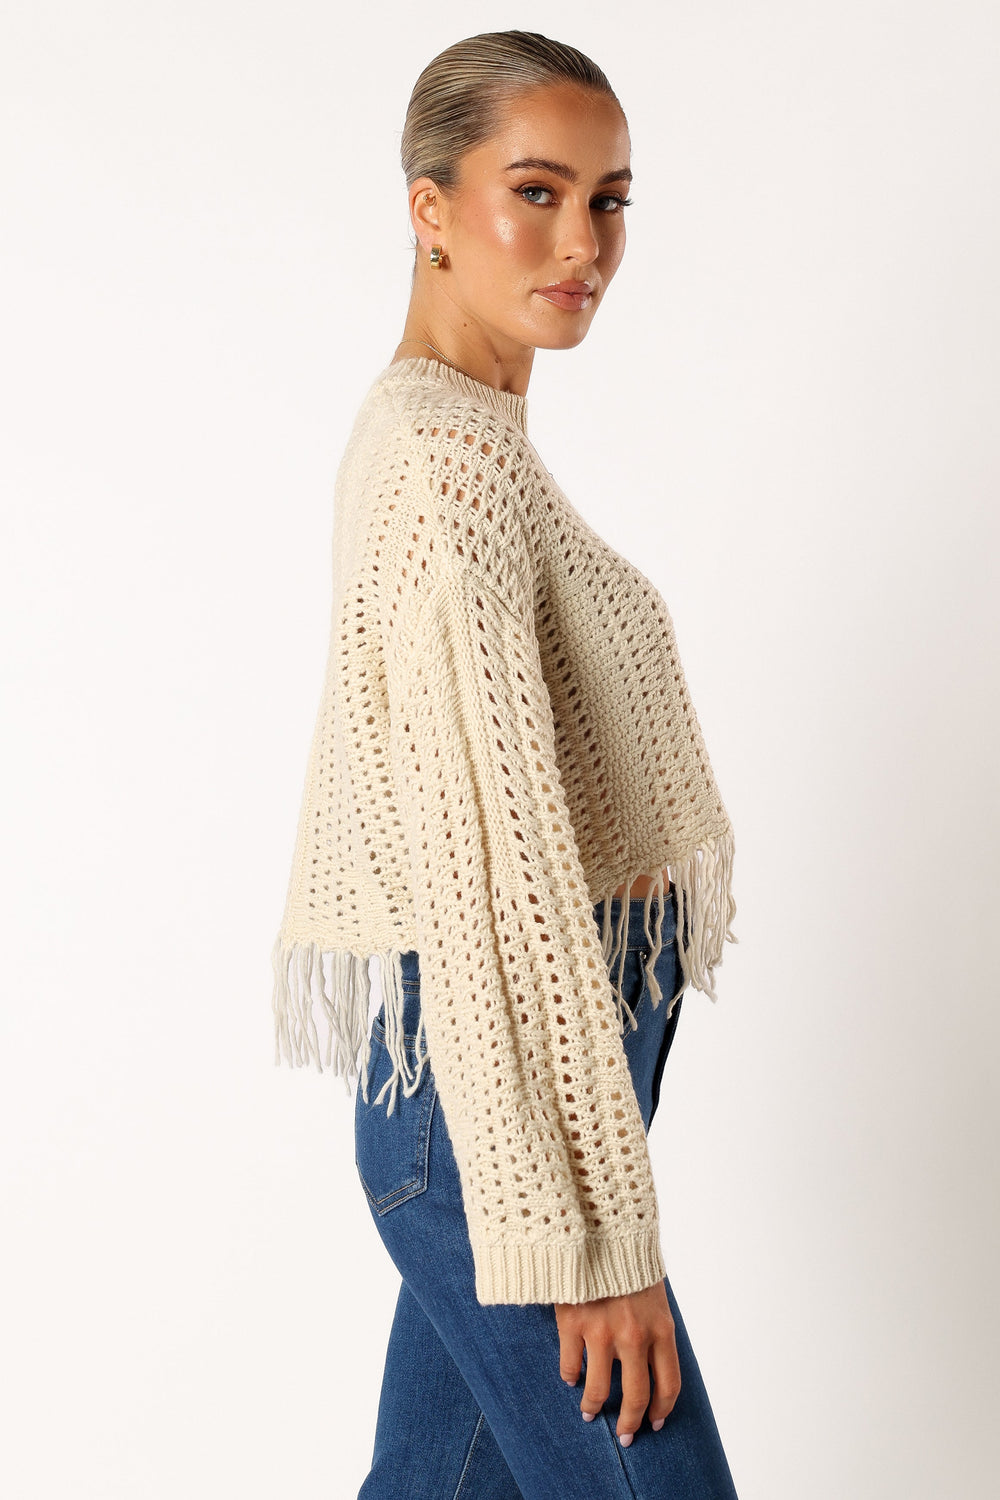 Katalina Fringe Crop Knit Sweater - Cream - Petal & Pup USA